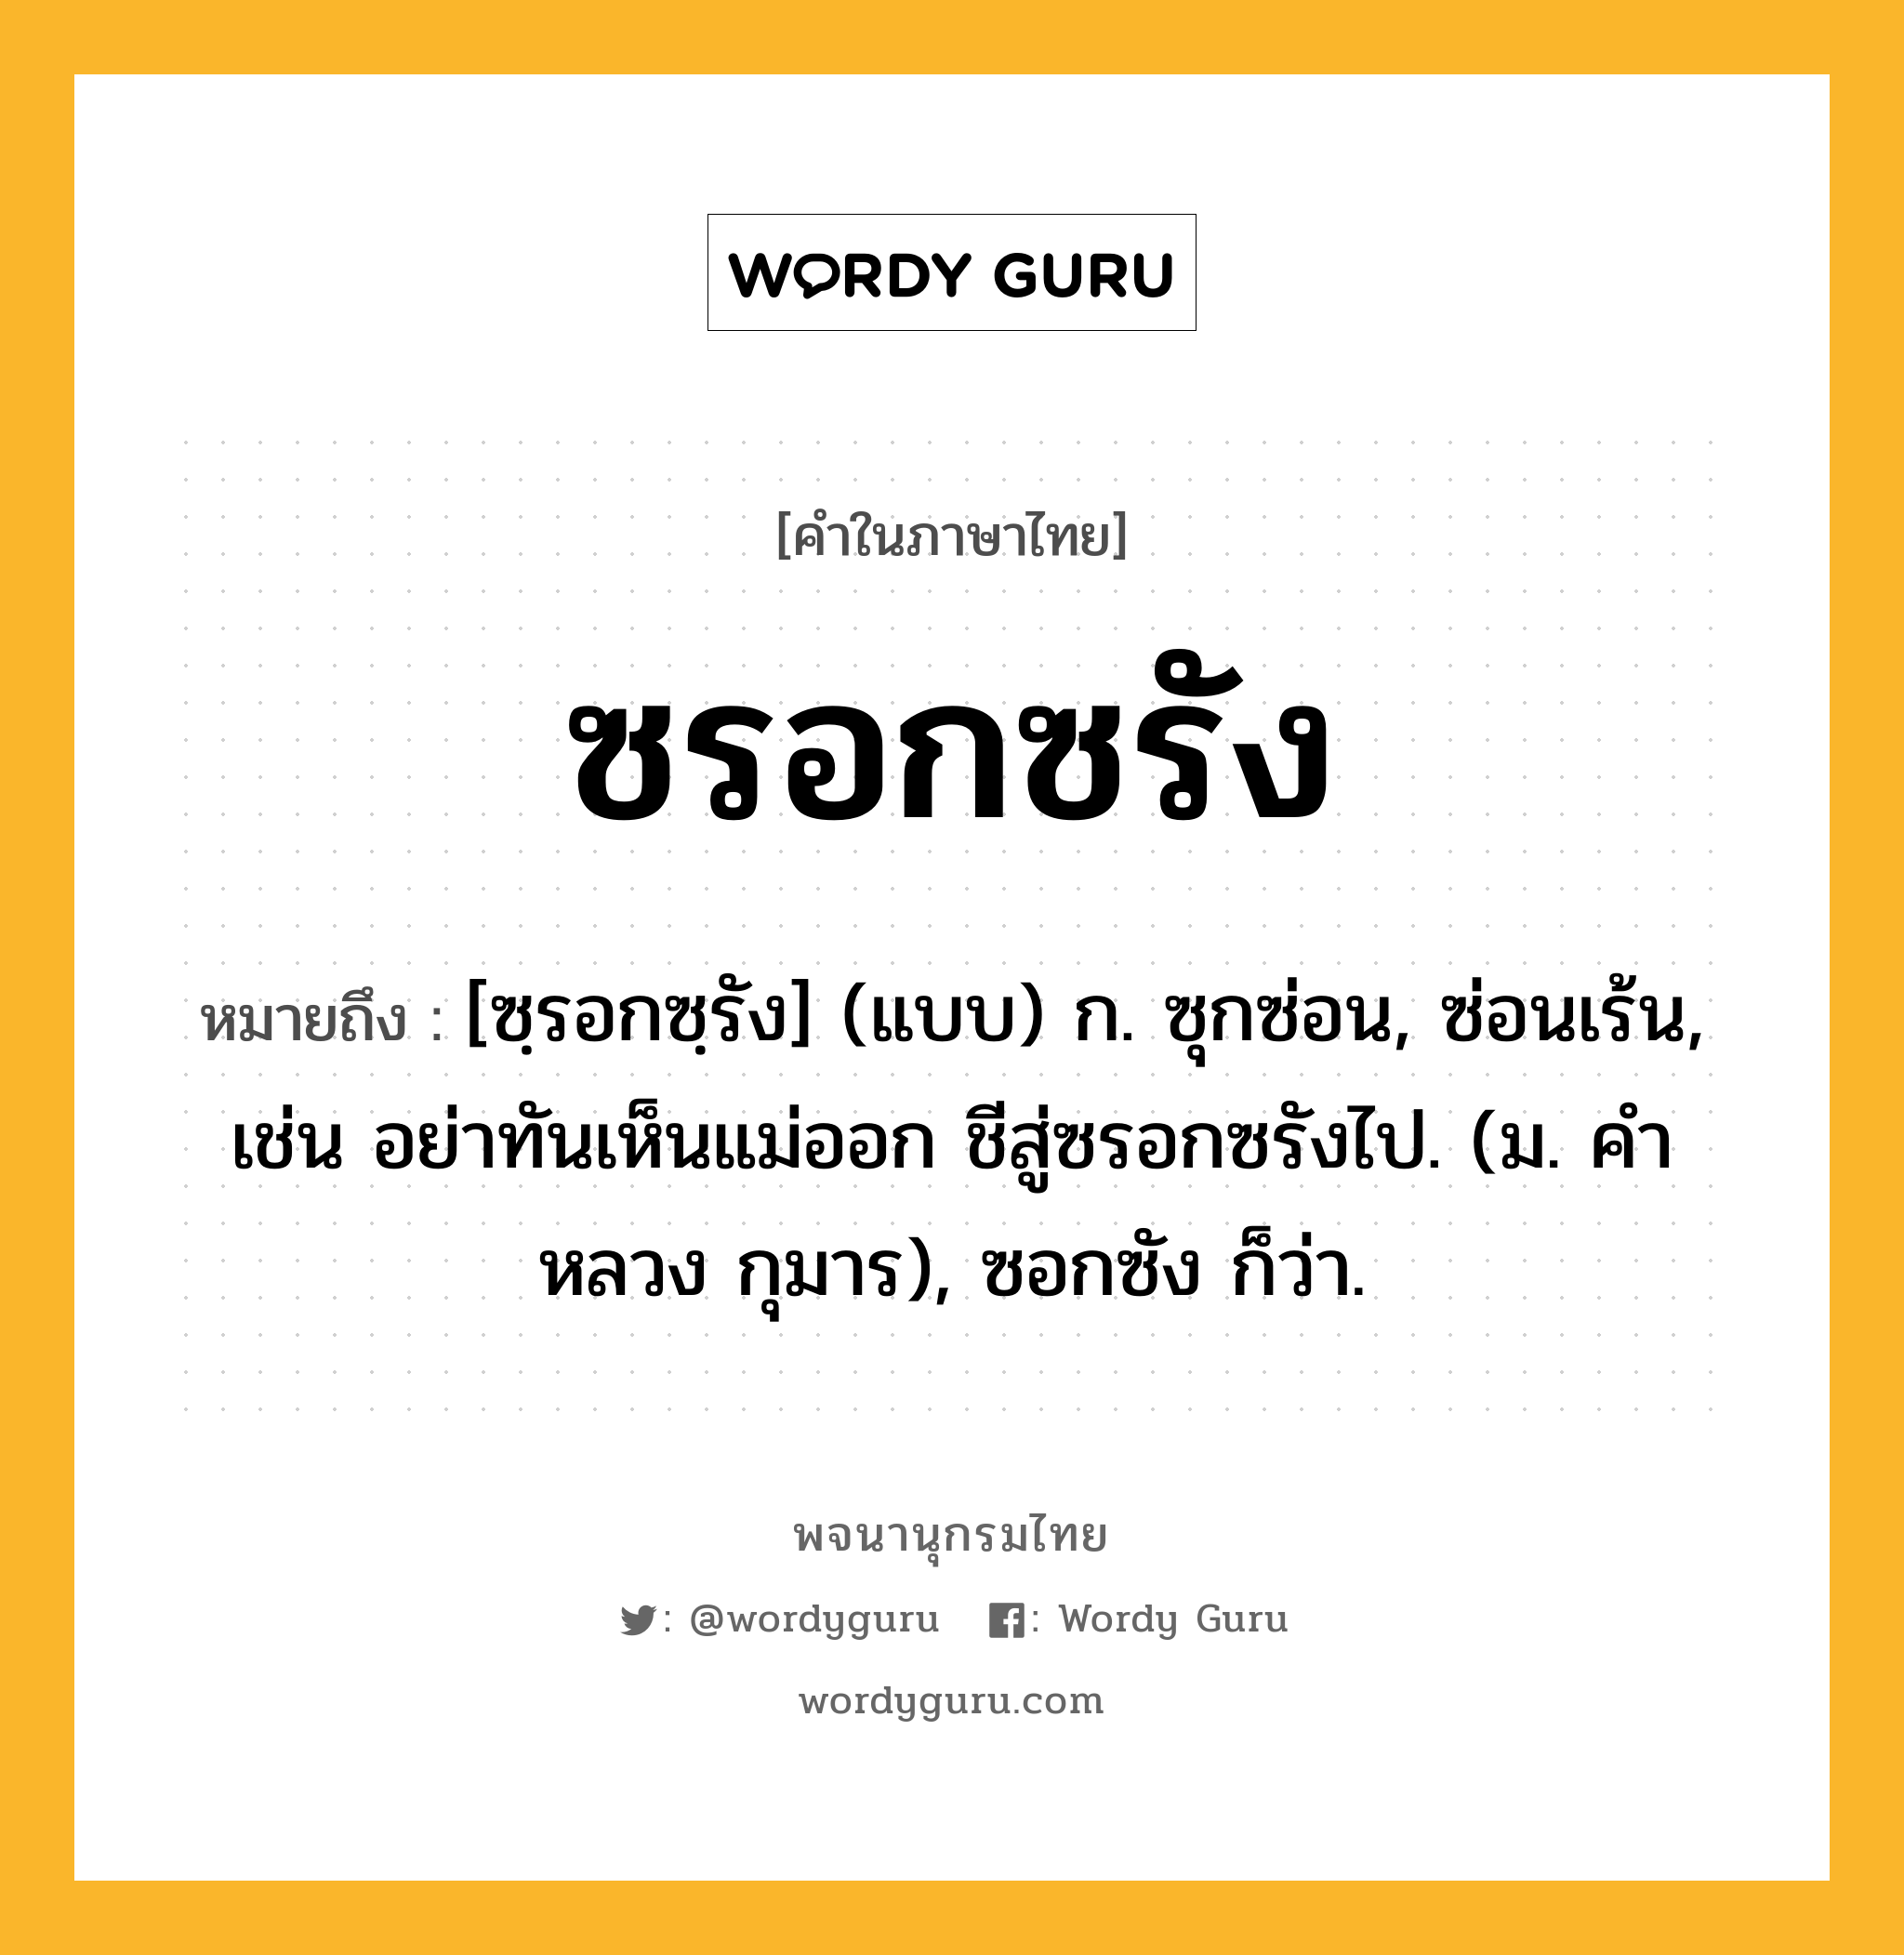 ซรอกซรัง หมายถึงอะไร?, คำในภาษาไทย ซรอกซรัง หมายถึง [ซฺรอกซฺรัง] (แบบ) ก. ซุกซ่อน, ซ่อนเร้น, เช่น อย่าทันเห็นแม่ออก ชีสู่ซรอกซรังไป. (ม. คําหลวง กุมาร), ซอกซัง ก็ว่า.